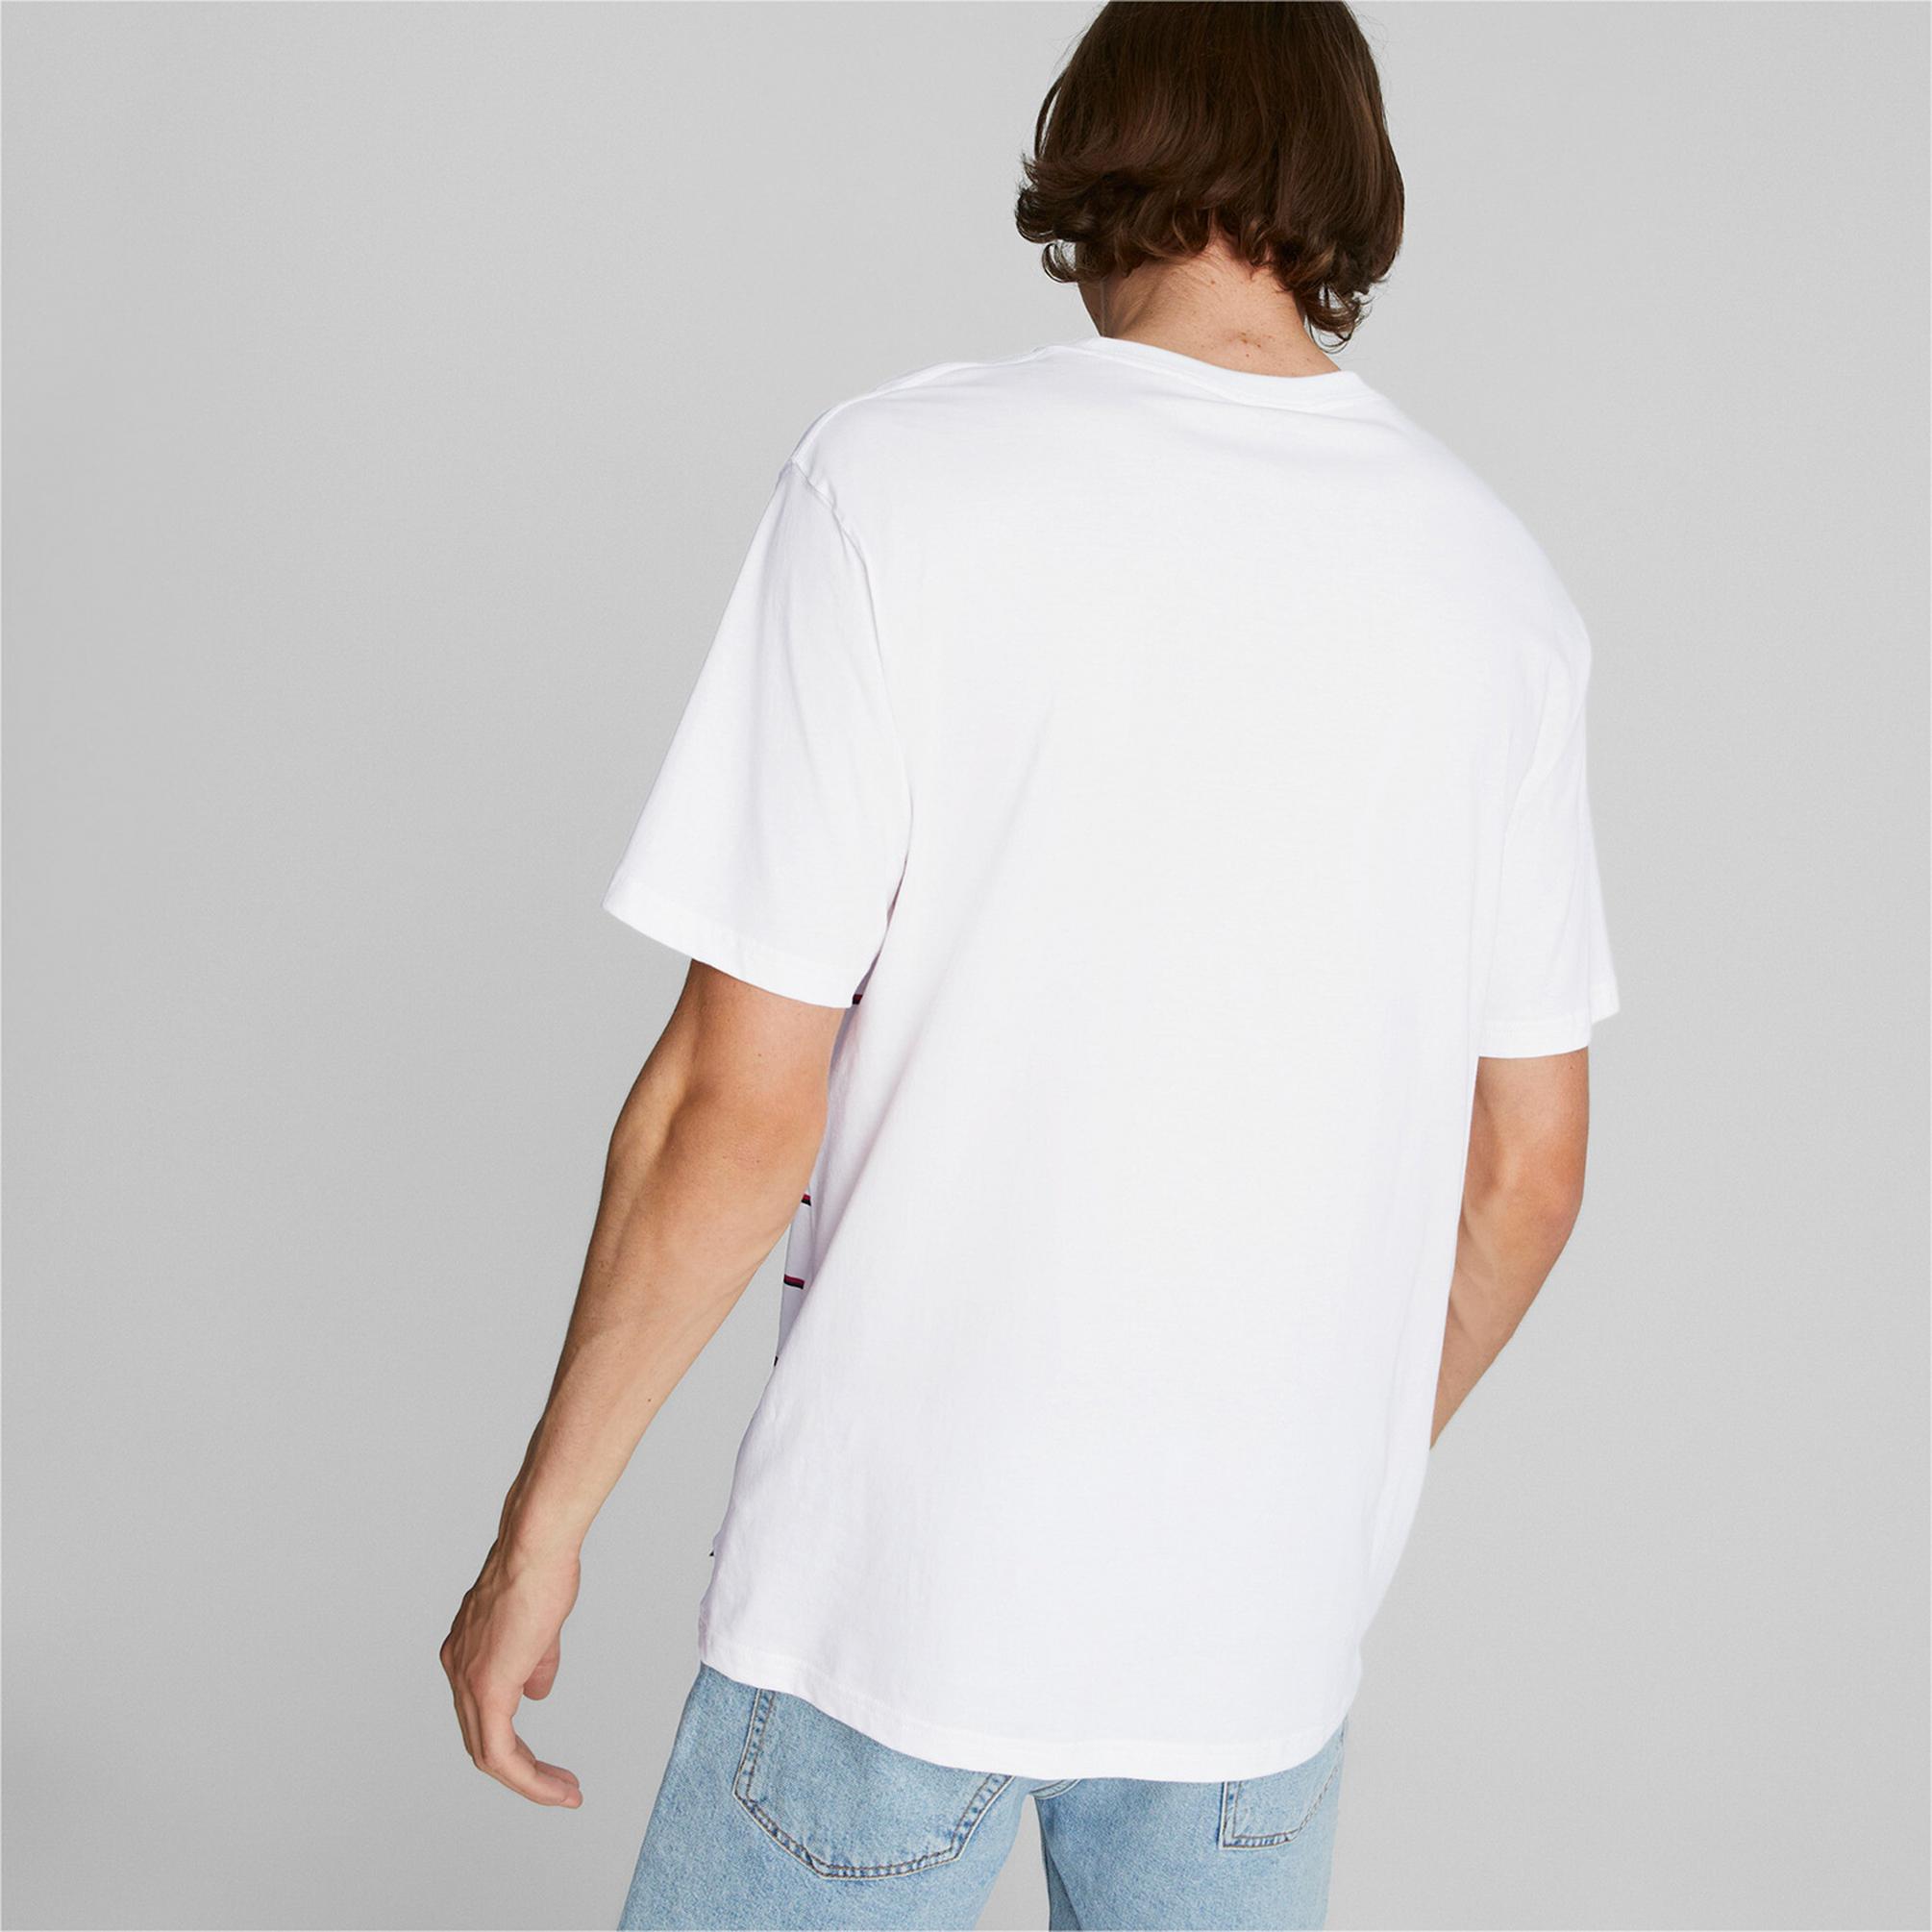  Puma AC Milan Unisex Beyaz T-Shirt